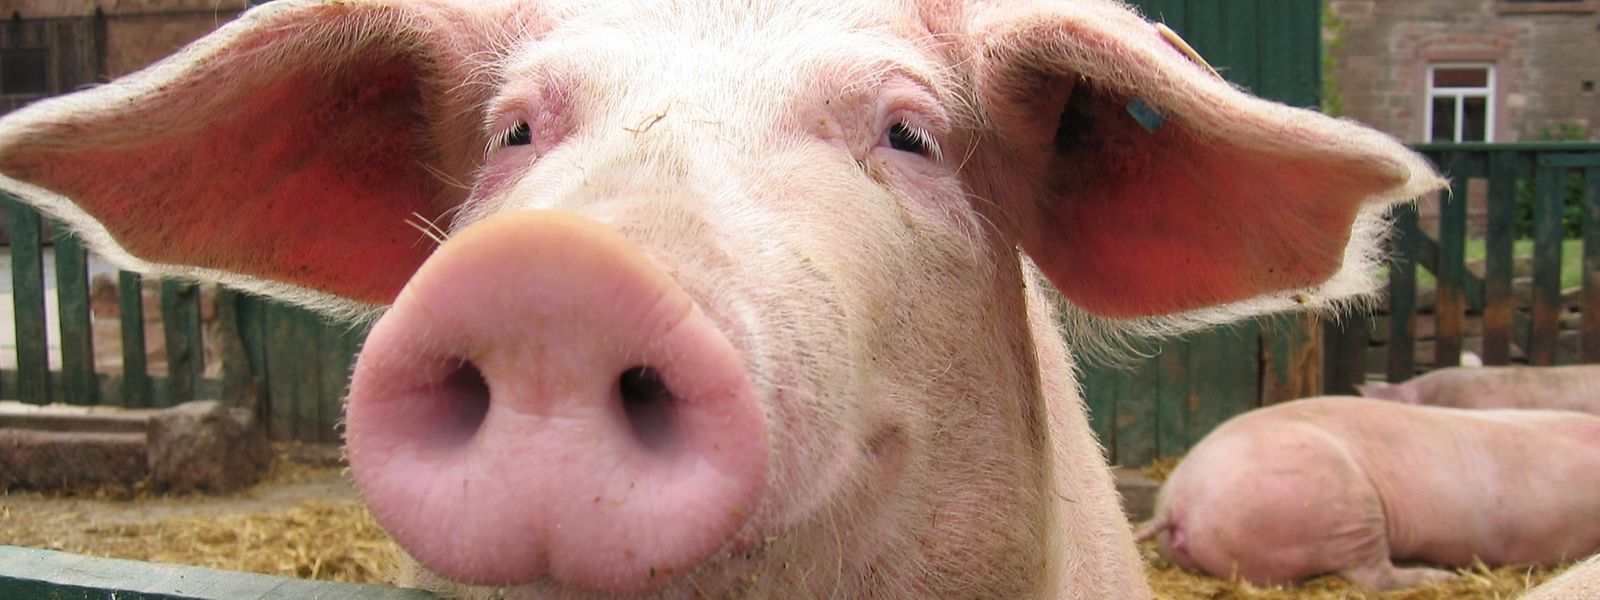 Nur die wenigsten Schweine in Europa werden so gehalten wie diese hier: Billigfleisch ist durch Massentierhaltung möglich - doch jetzt kommen die steigenden Energiepreise und Folgekosten hinzu.